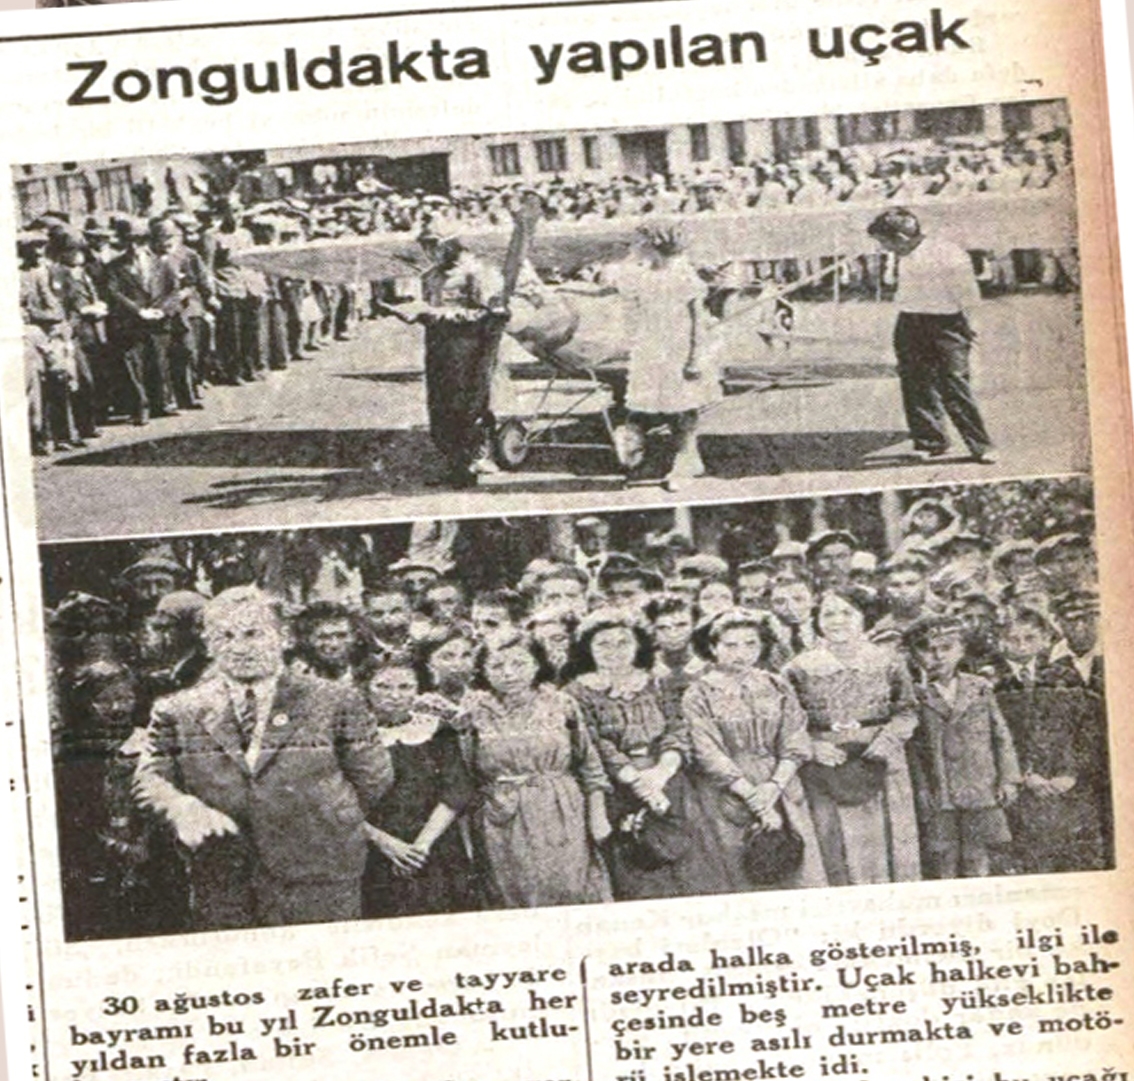 Zonguldak'ta Düzenlenen 30 Ağustos Zafer Ve Tayyare Bayramı, Geçmiş Yıllarda Büyük Bir Coşkuyla Kutlanıyordu. (1)